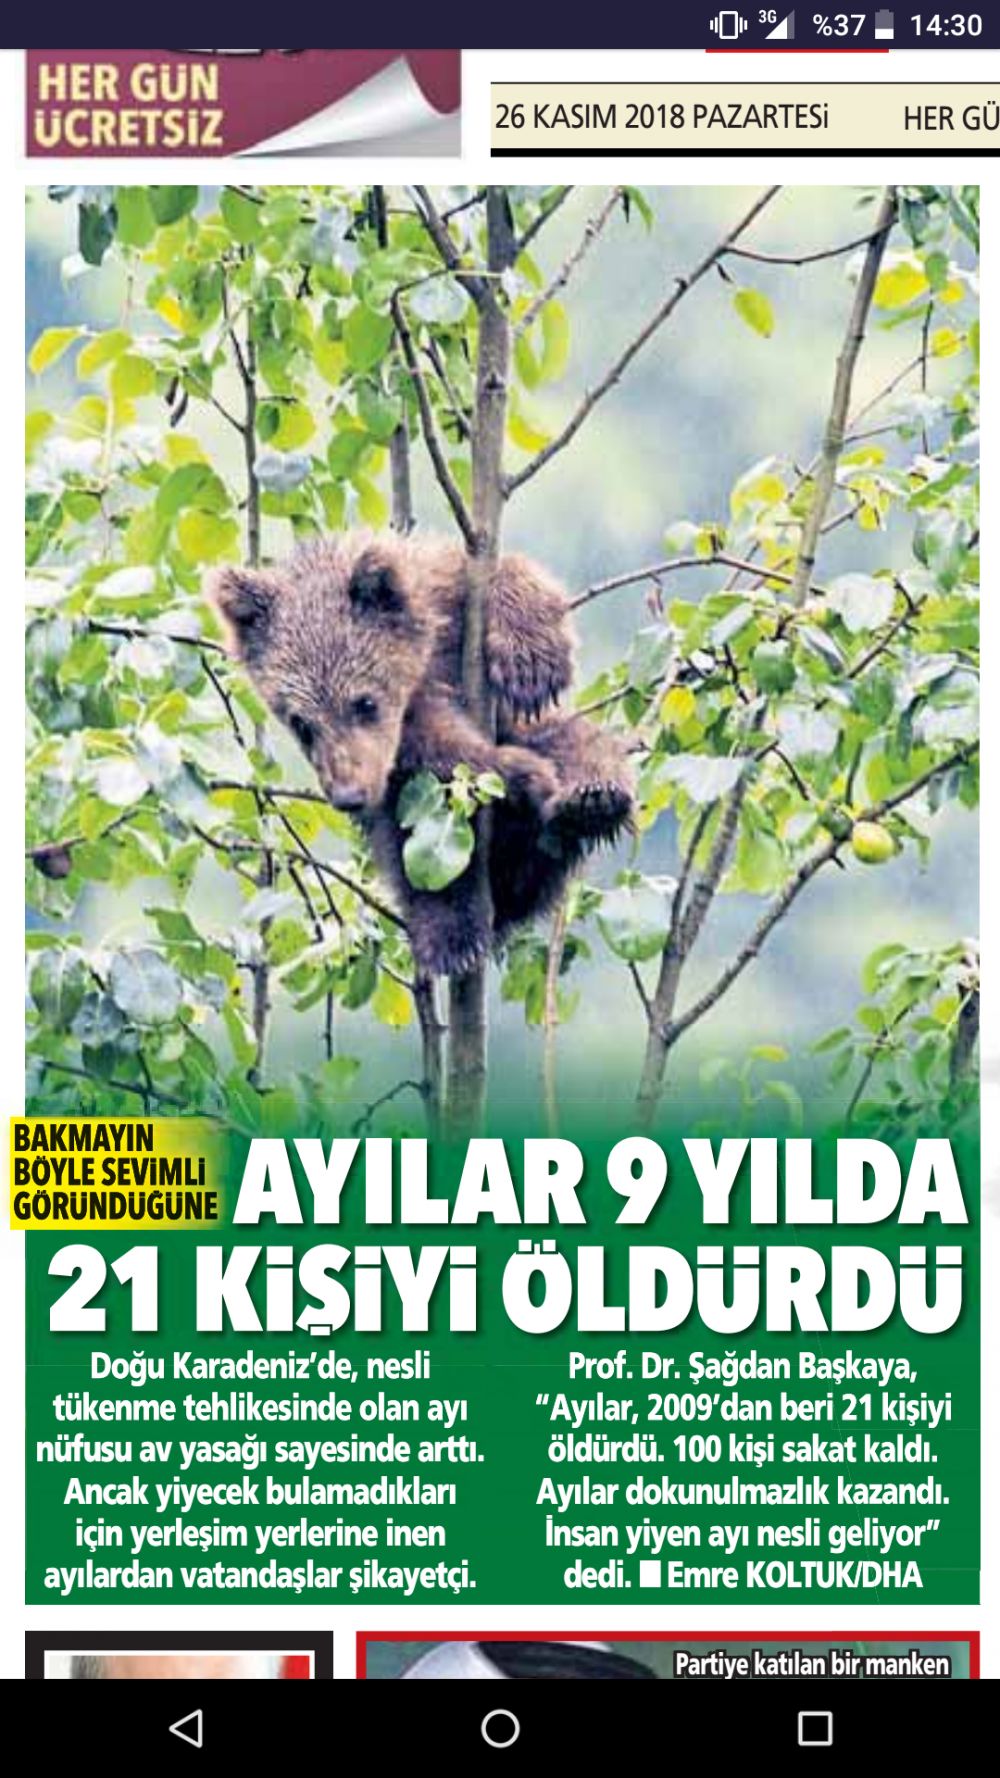 Karadeniz'de ayılar 9 yılda 21 kişiyi öldürdü?